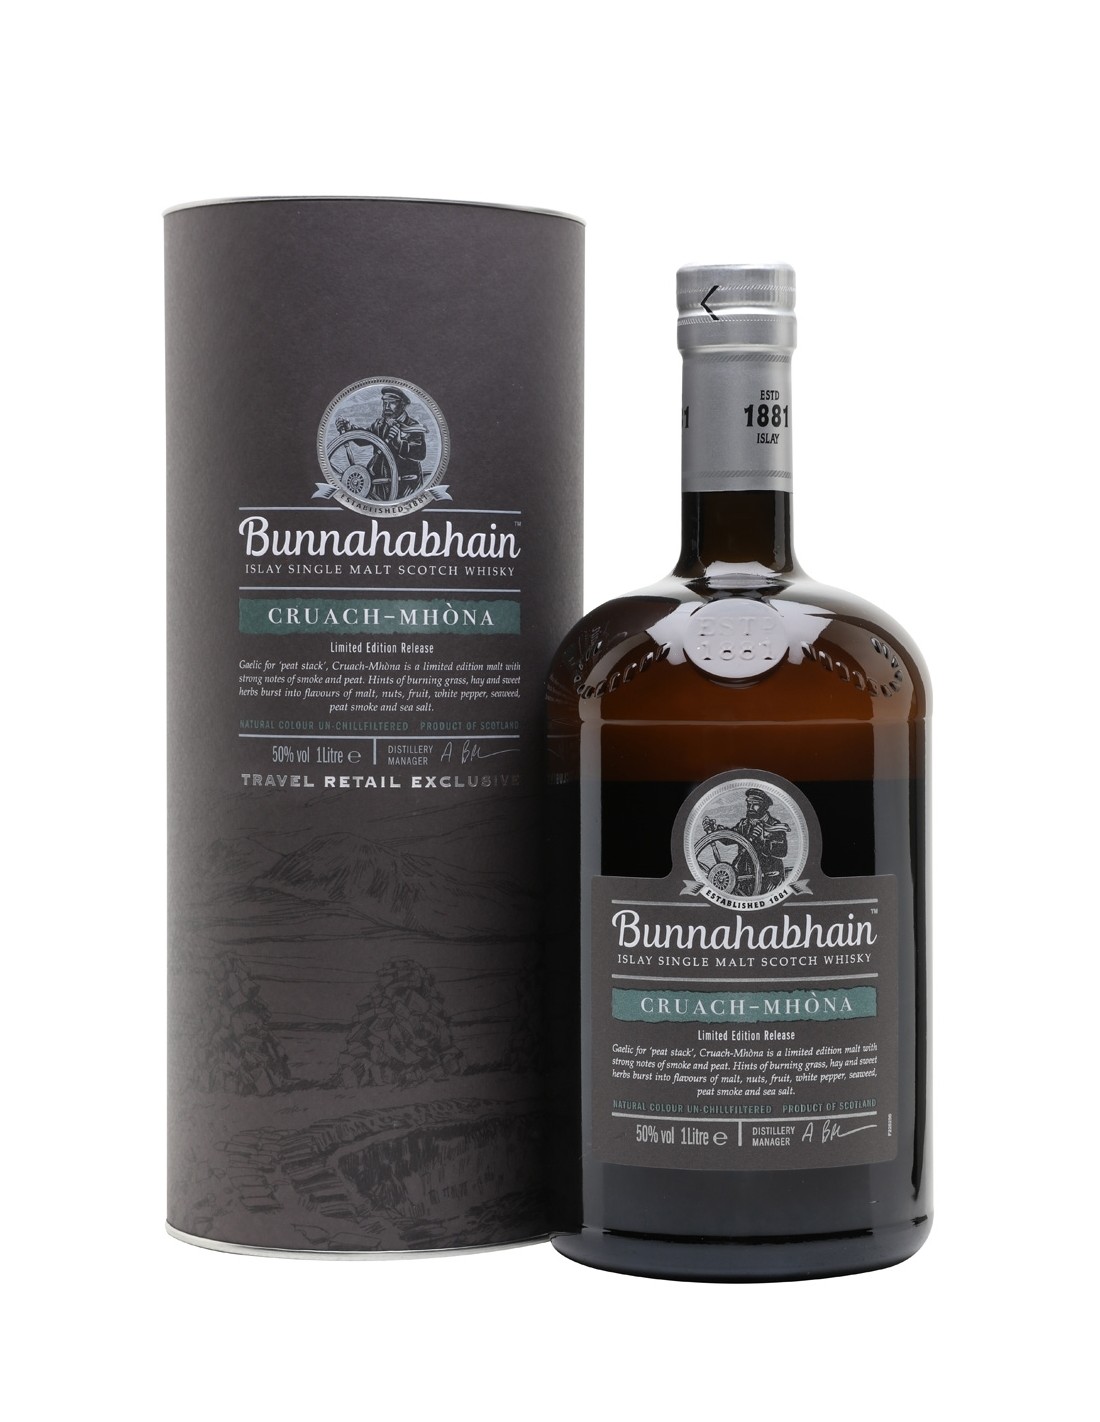 Whisky Bunnahabhain Cruach Mhòna, 50% alc., 1L, Scotia